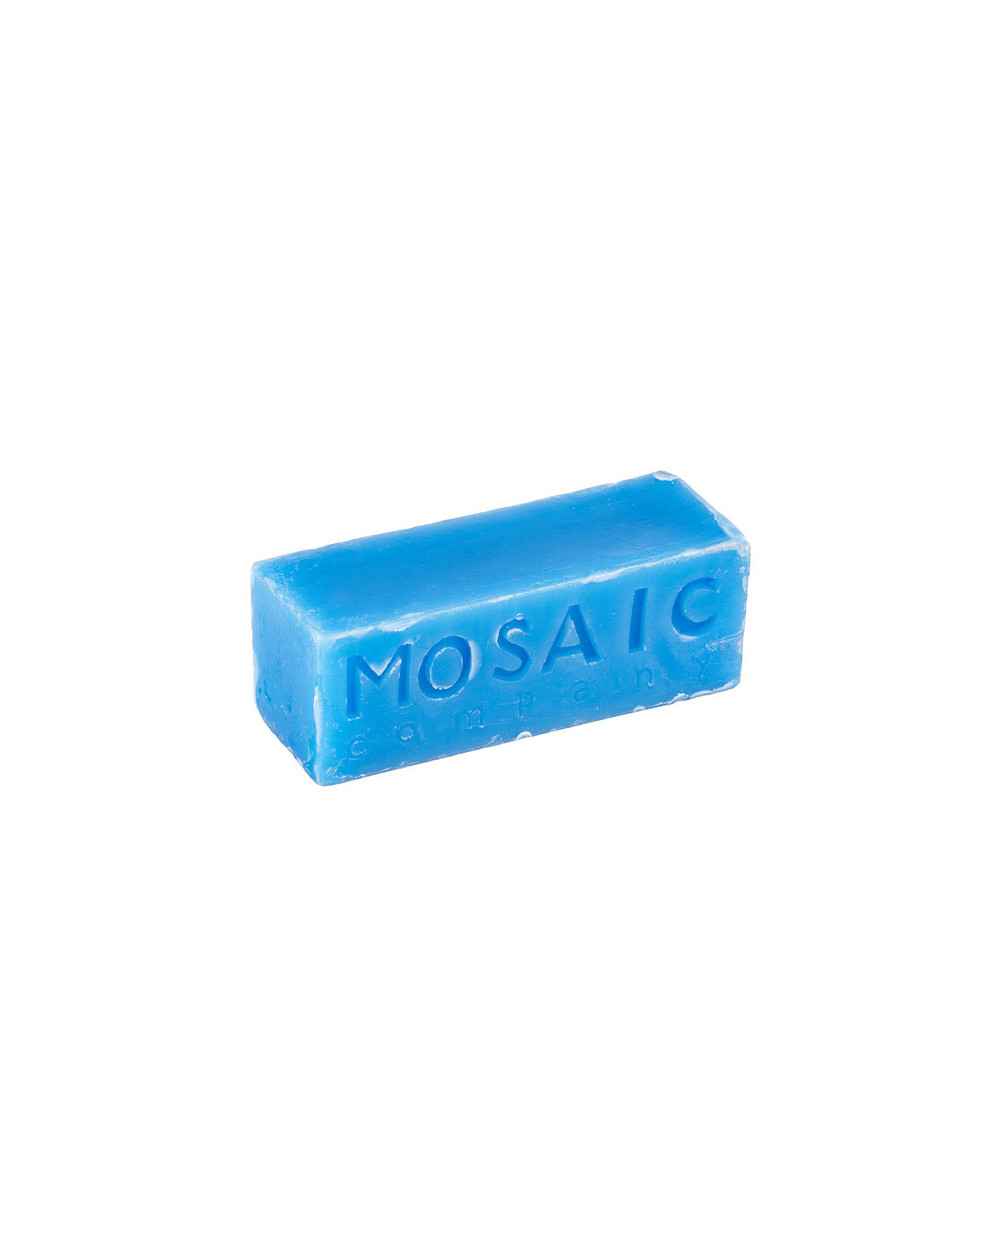 Mosaic Wax Sk8 Blue